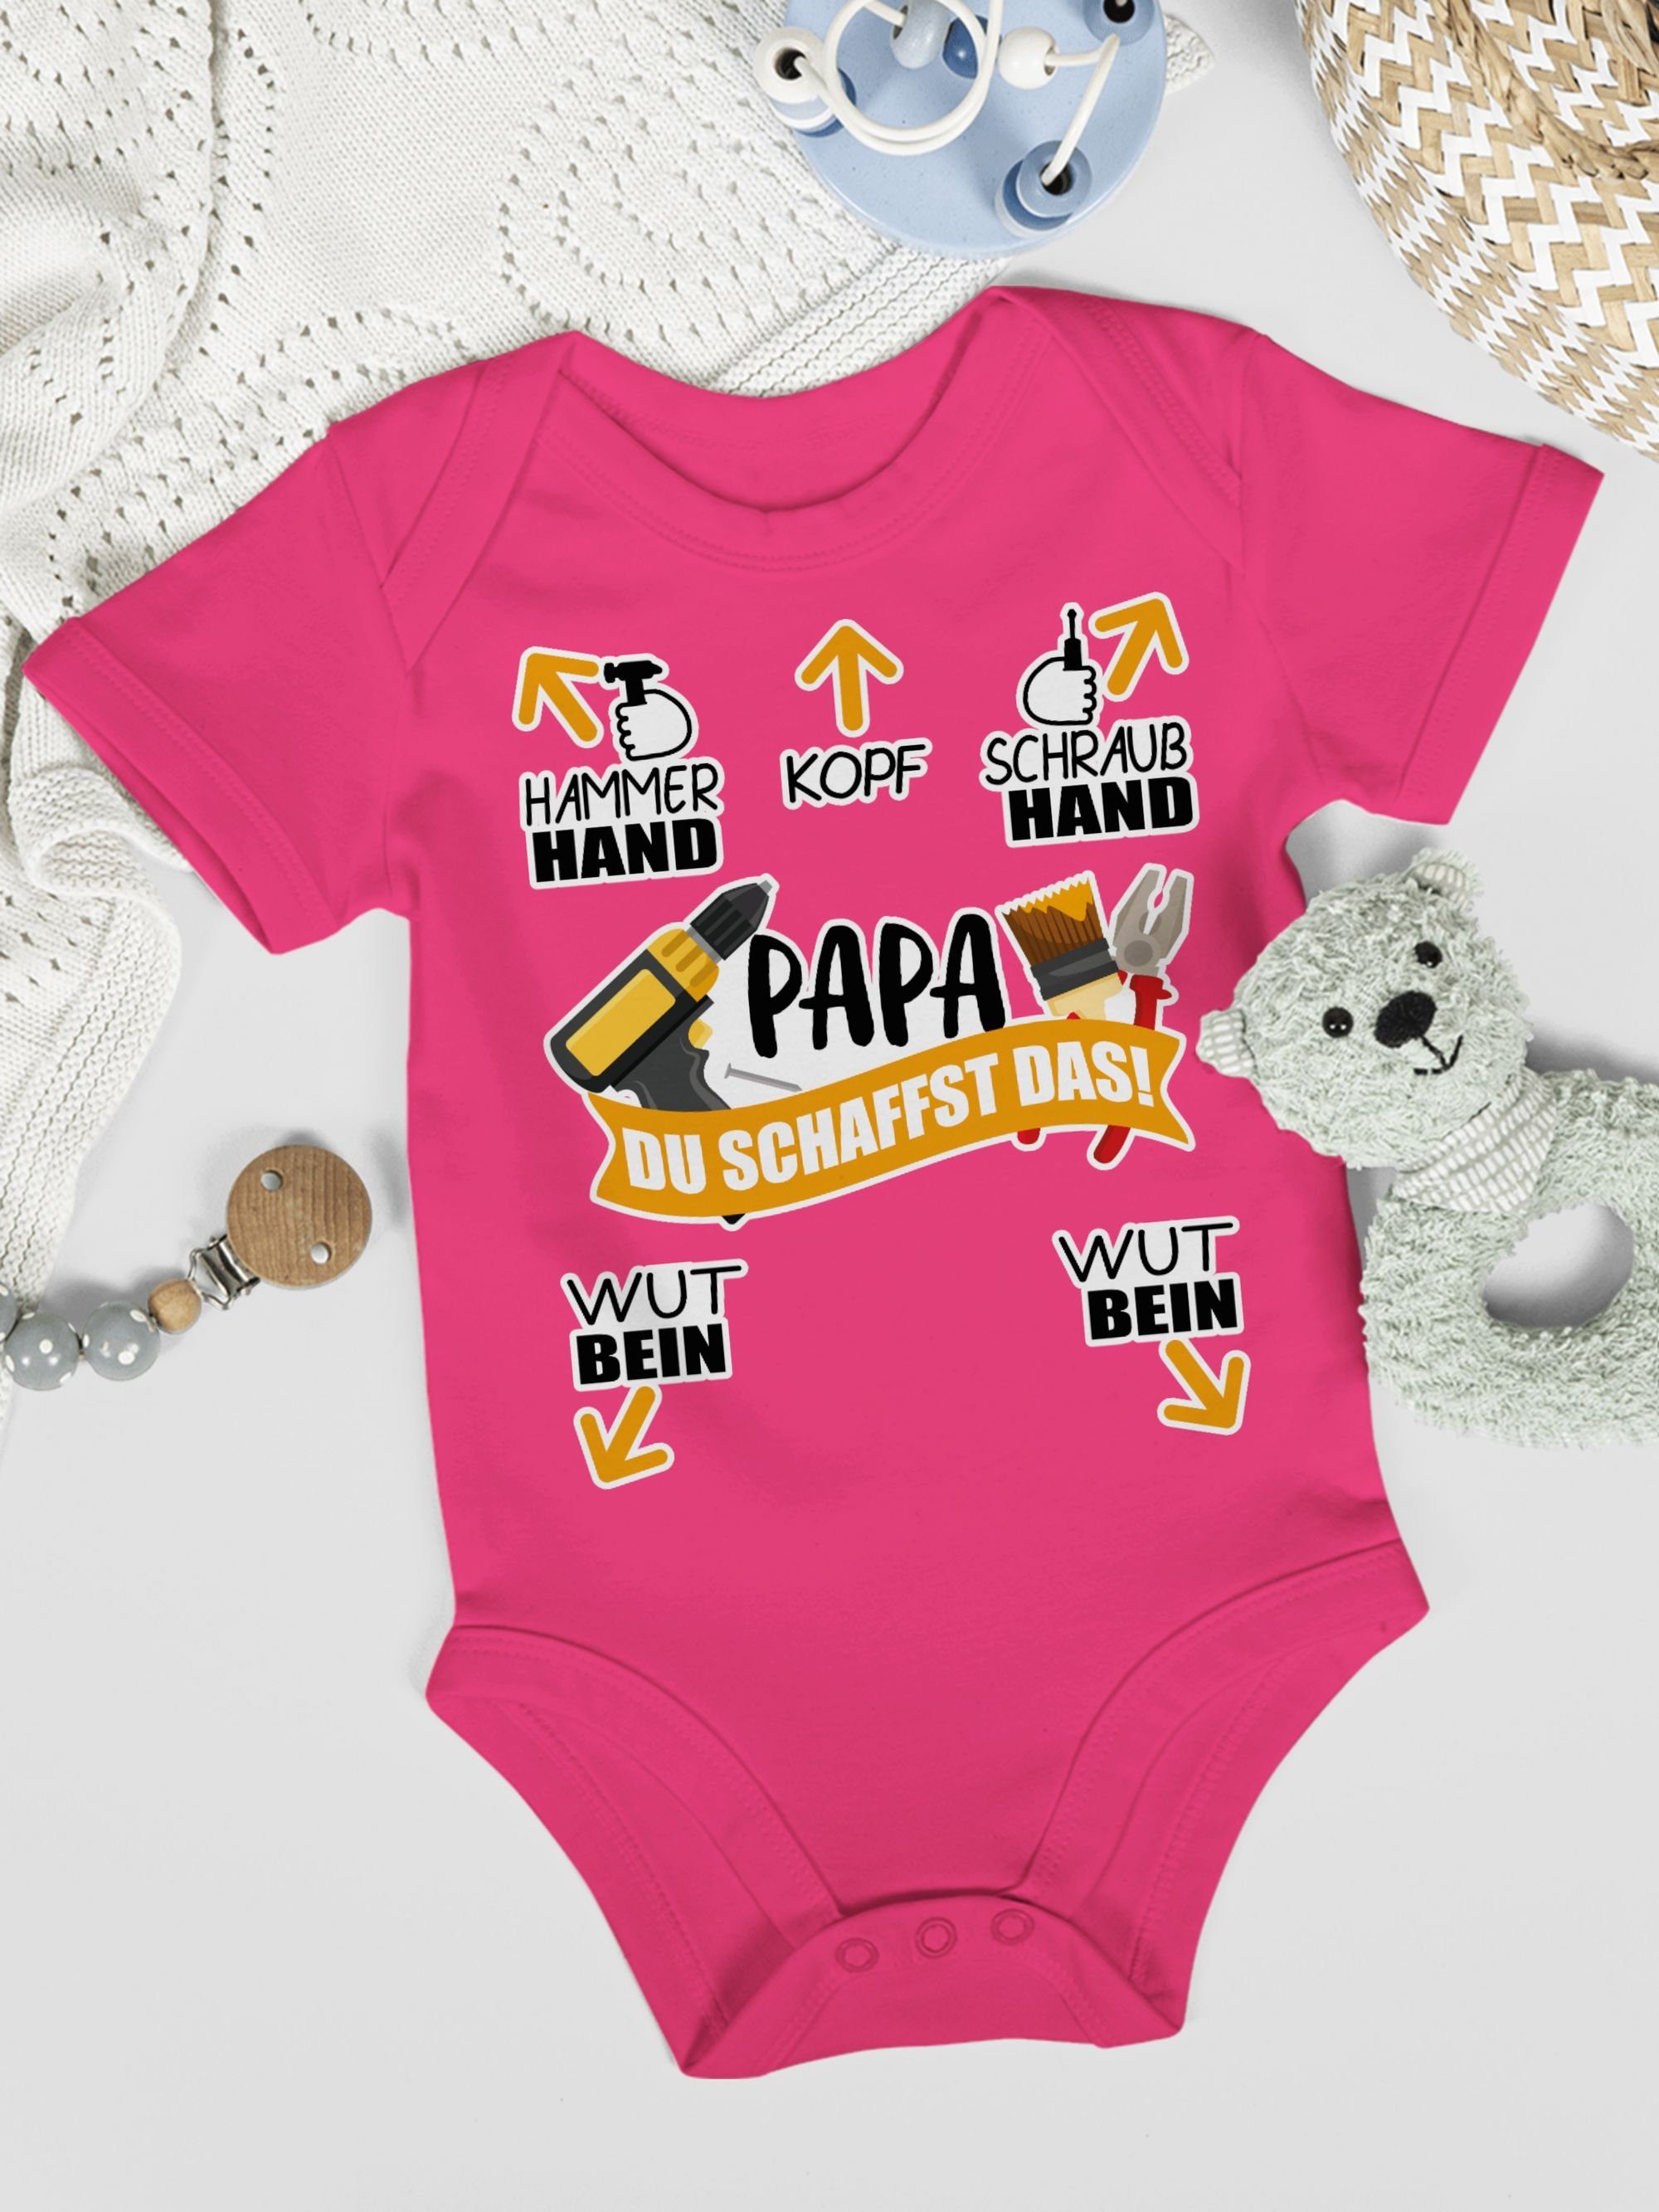 Papa 3 das! Werkzeug - Baby Geschenk Fuchsia Shirtbody Shirtracer - schaffst Du Vatertag